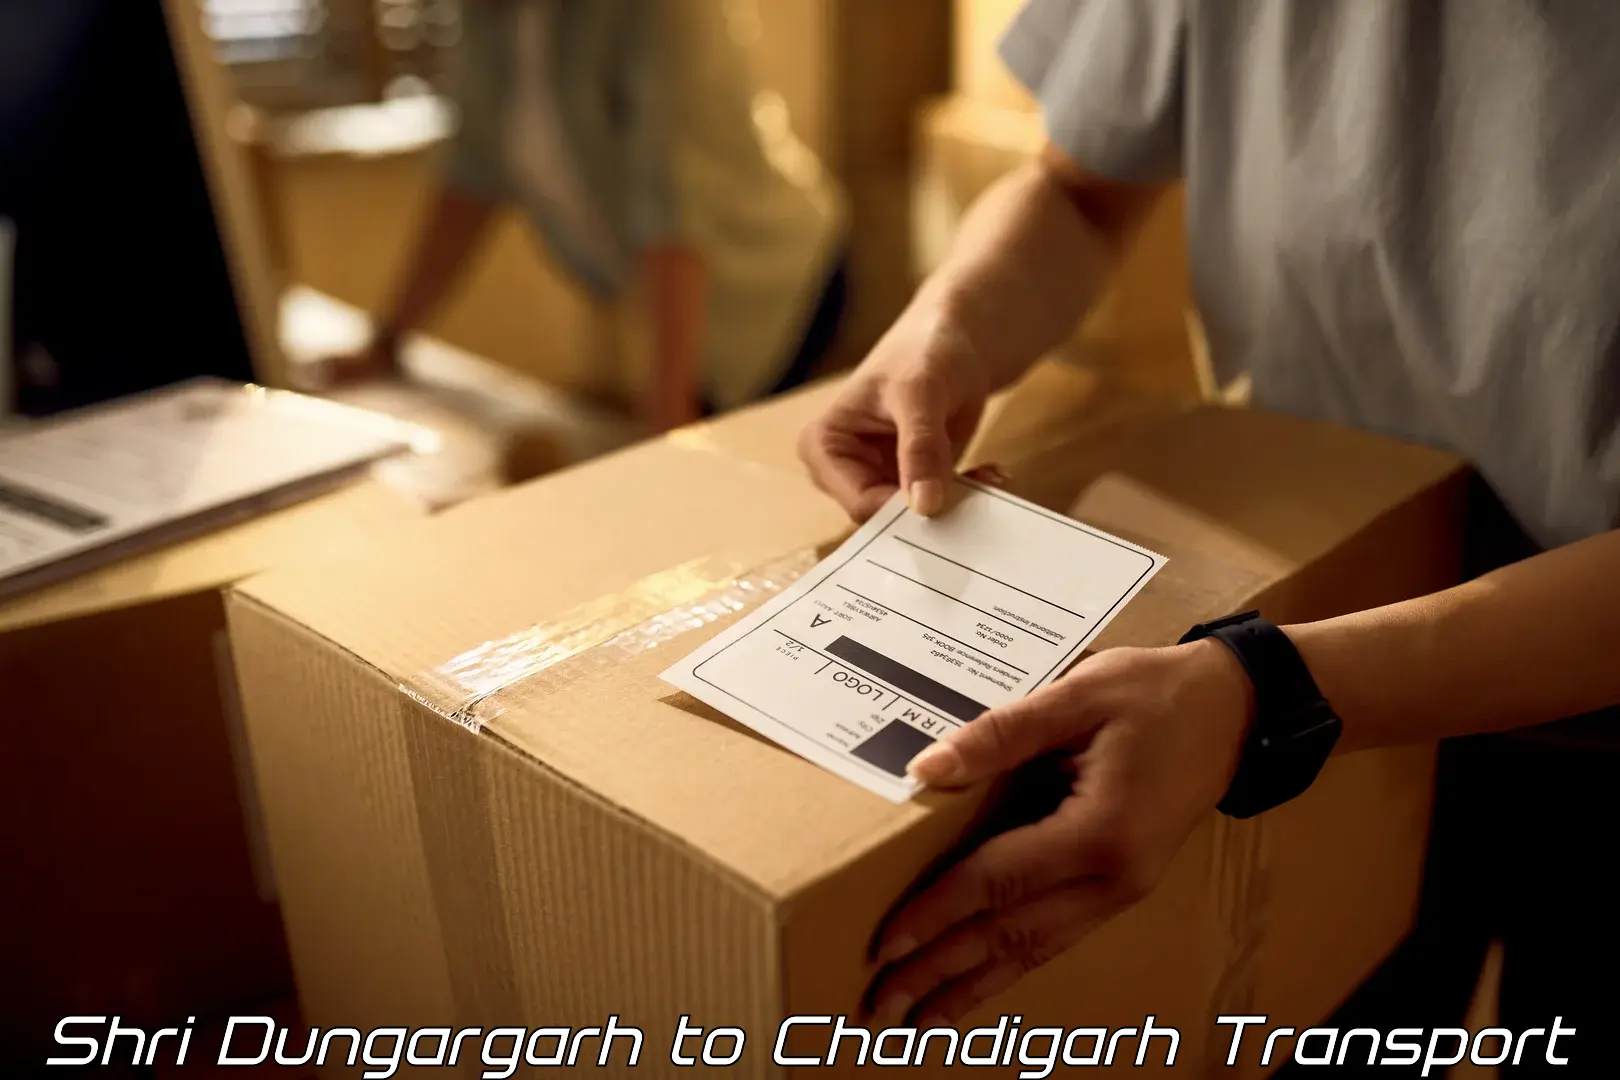 Bike shipping service Shri Dungargarh to Chandigarh